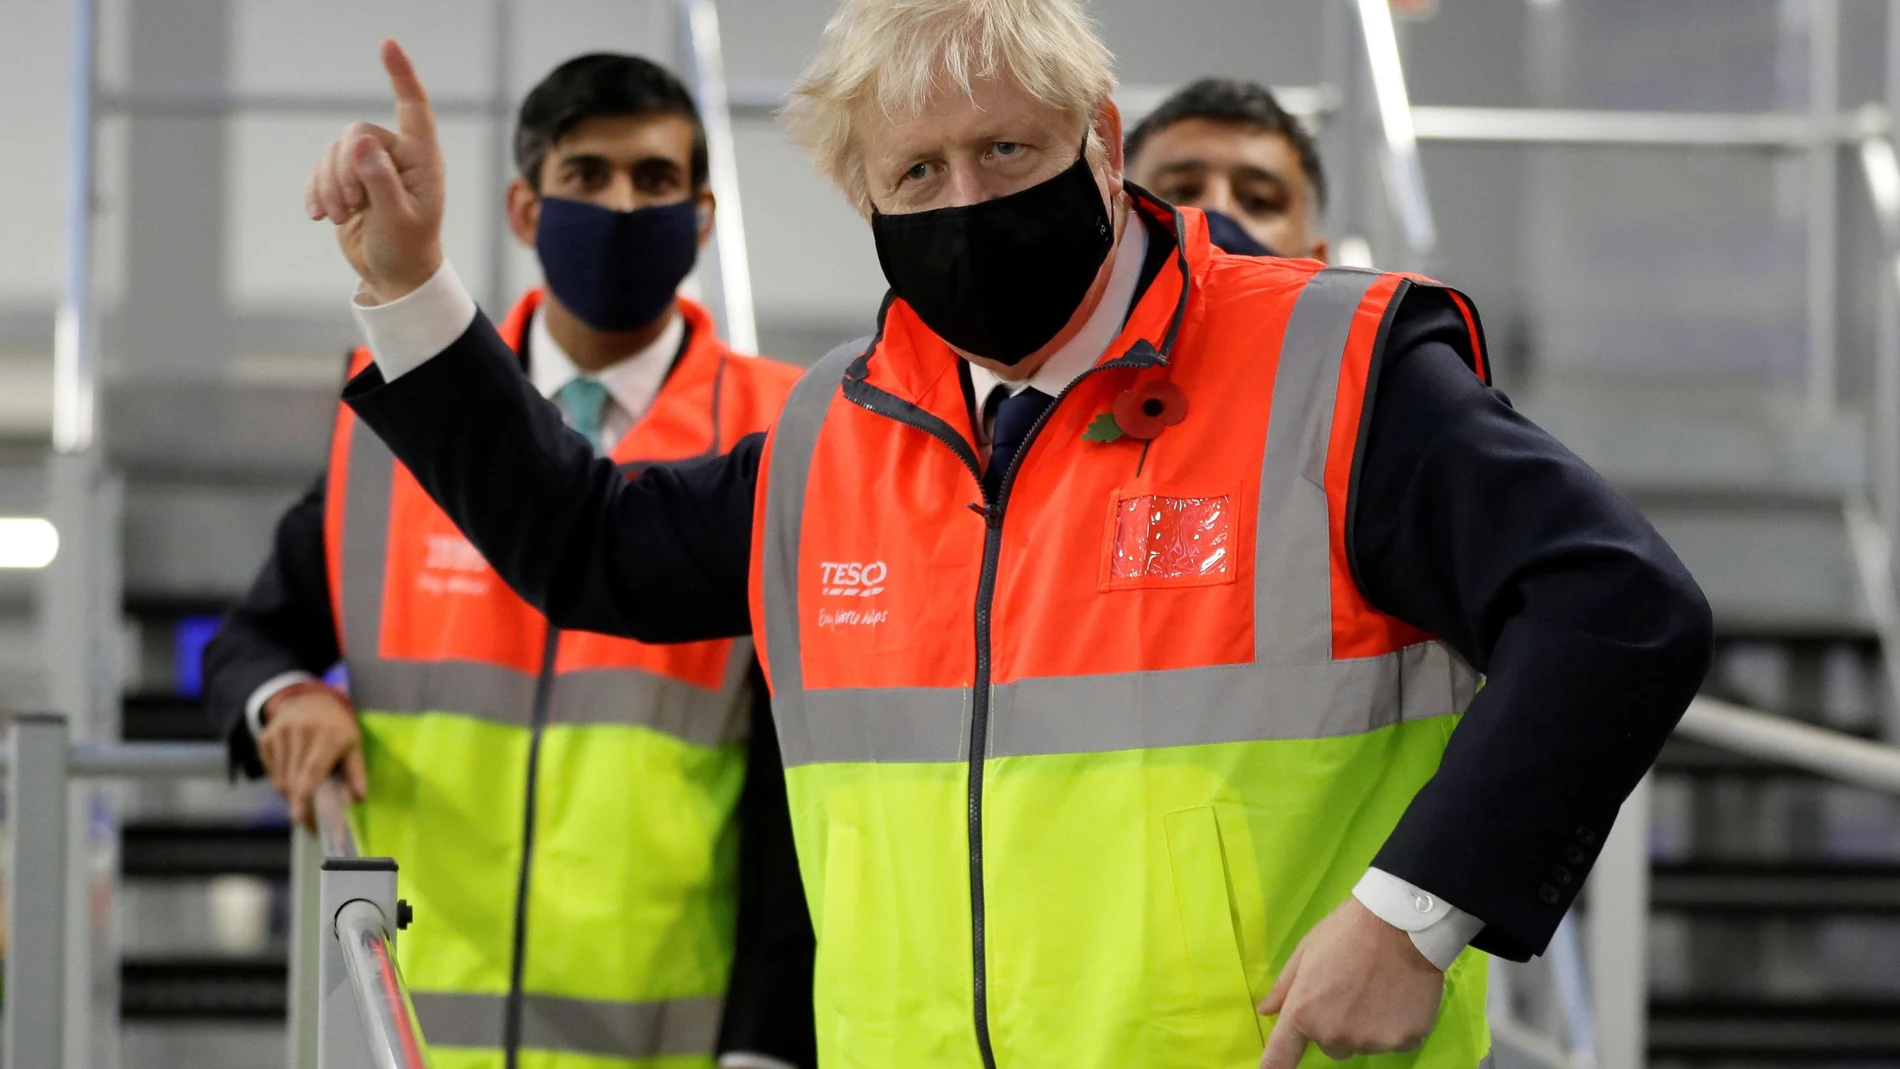 El "premier" Boris Johnson, acompañado del ministro de Finanzas, Rishi Sunak, visitan un centro de distribución de Tesco en el centro de Londres